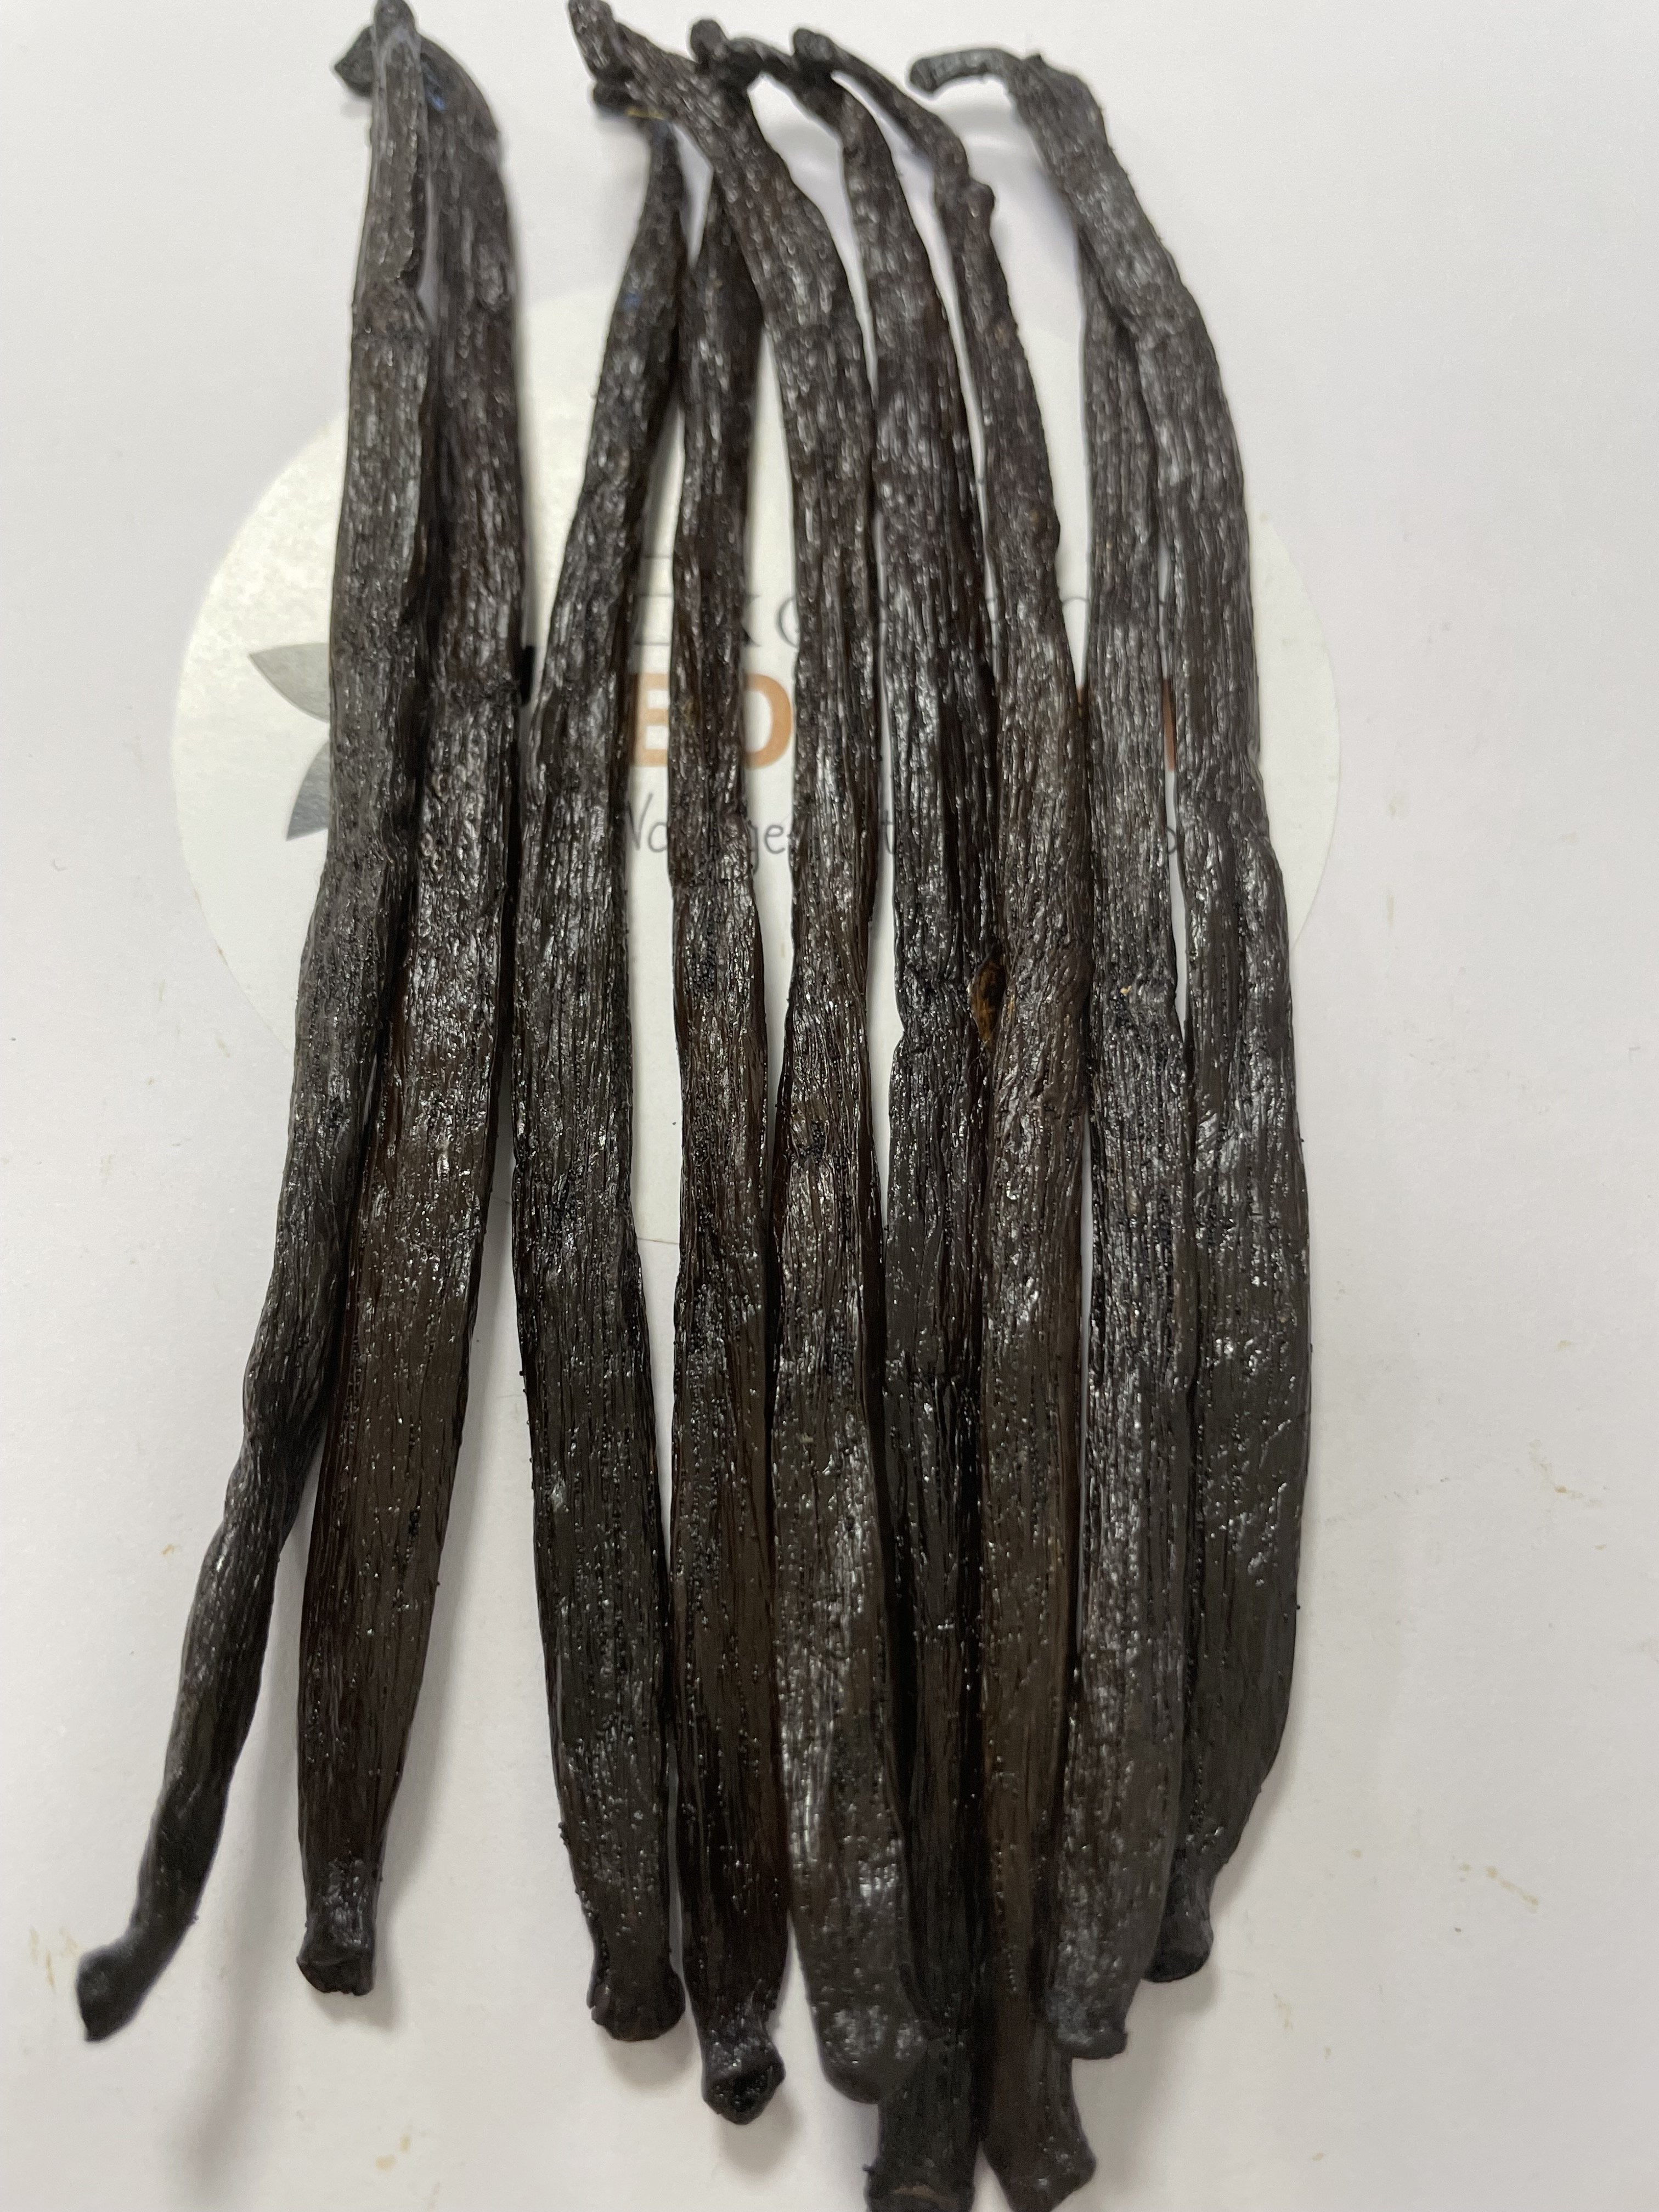 Madagascar Lot de 10 gousses de vanille Qualité supérieure A 14-17 cm